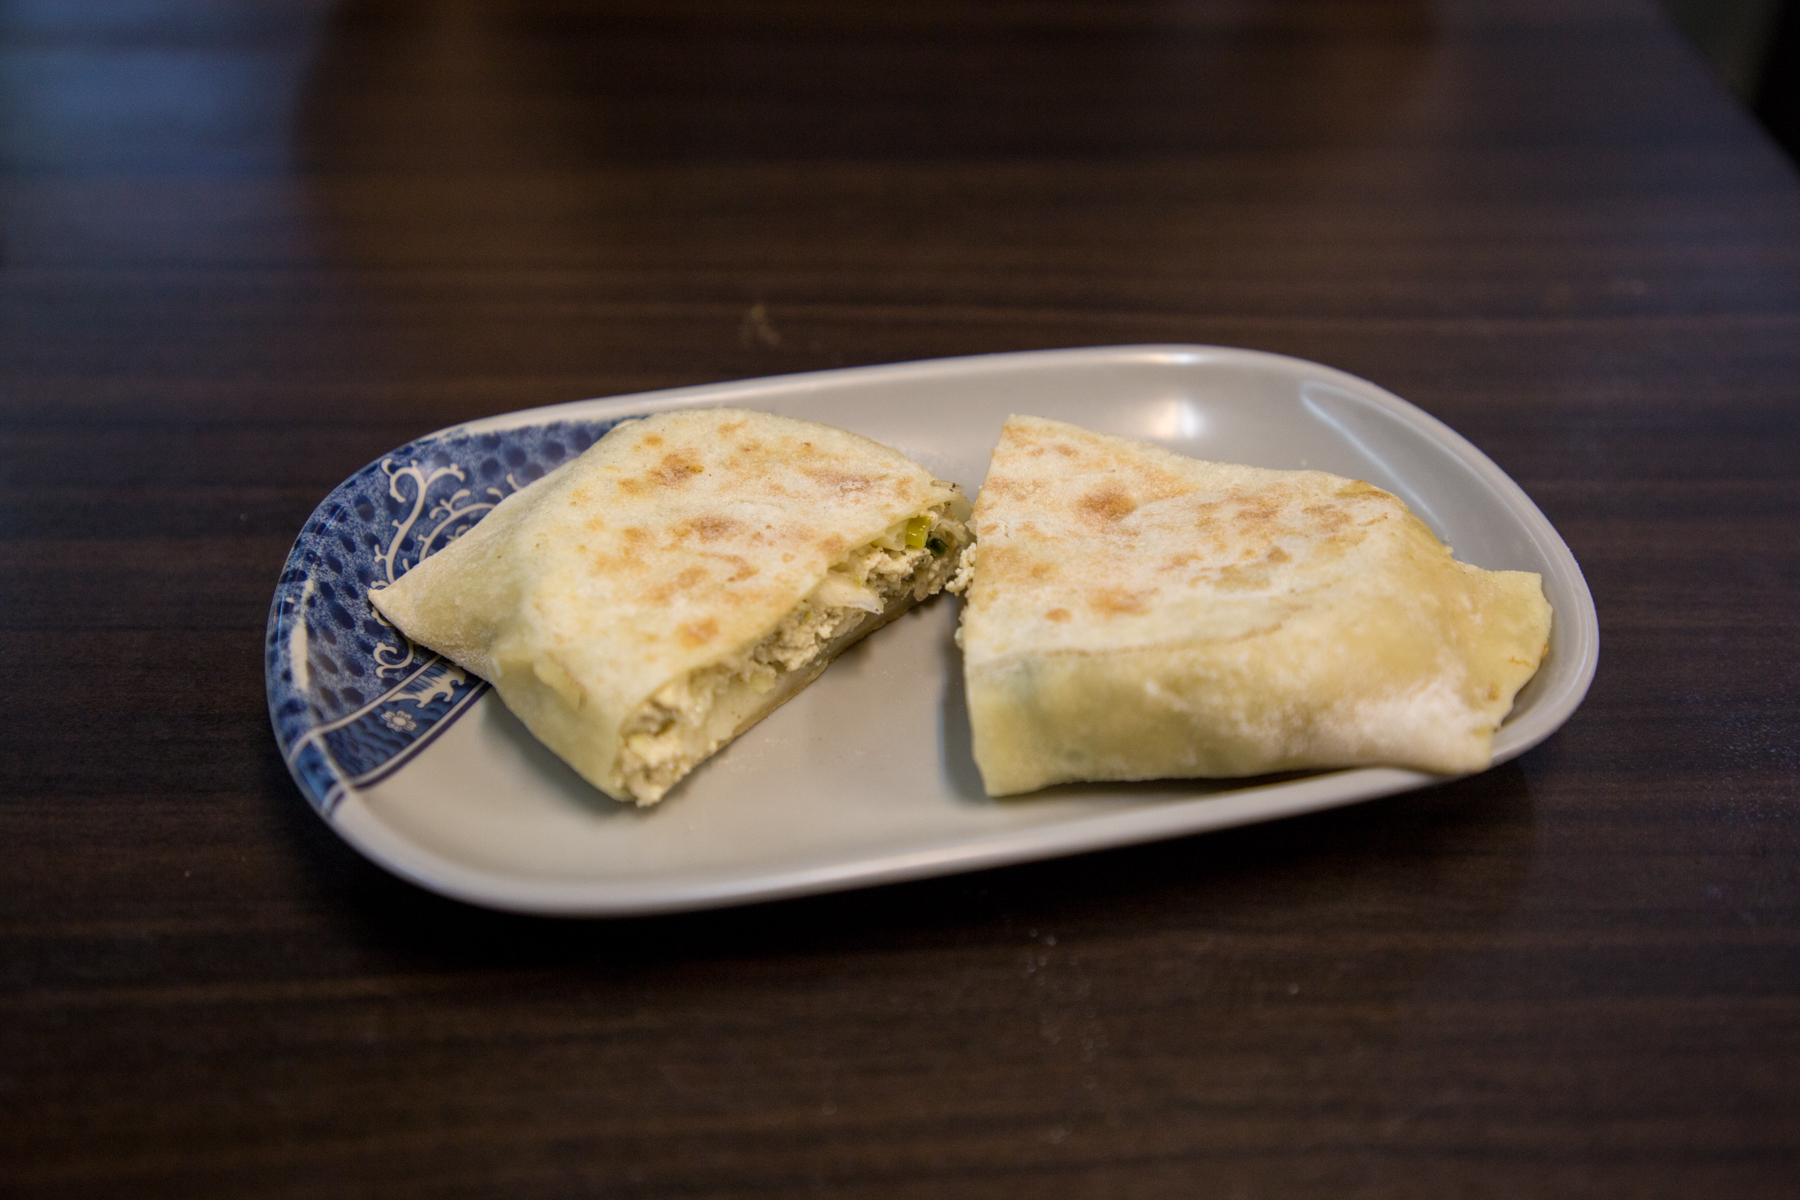 小麦粉で作った皮が異常においしい中華式ピタパンを心ゆくまでお召し上がりください 江蘇菜盒店 台湾飯